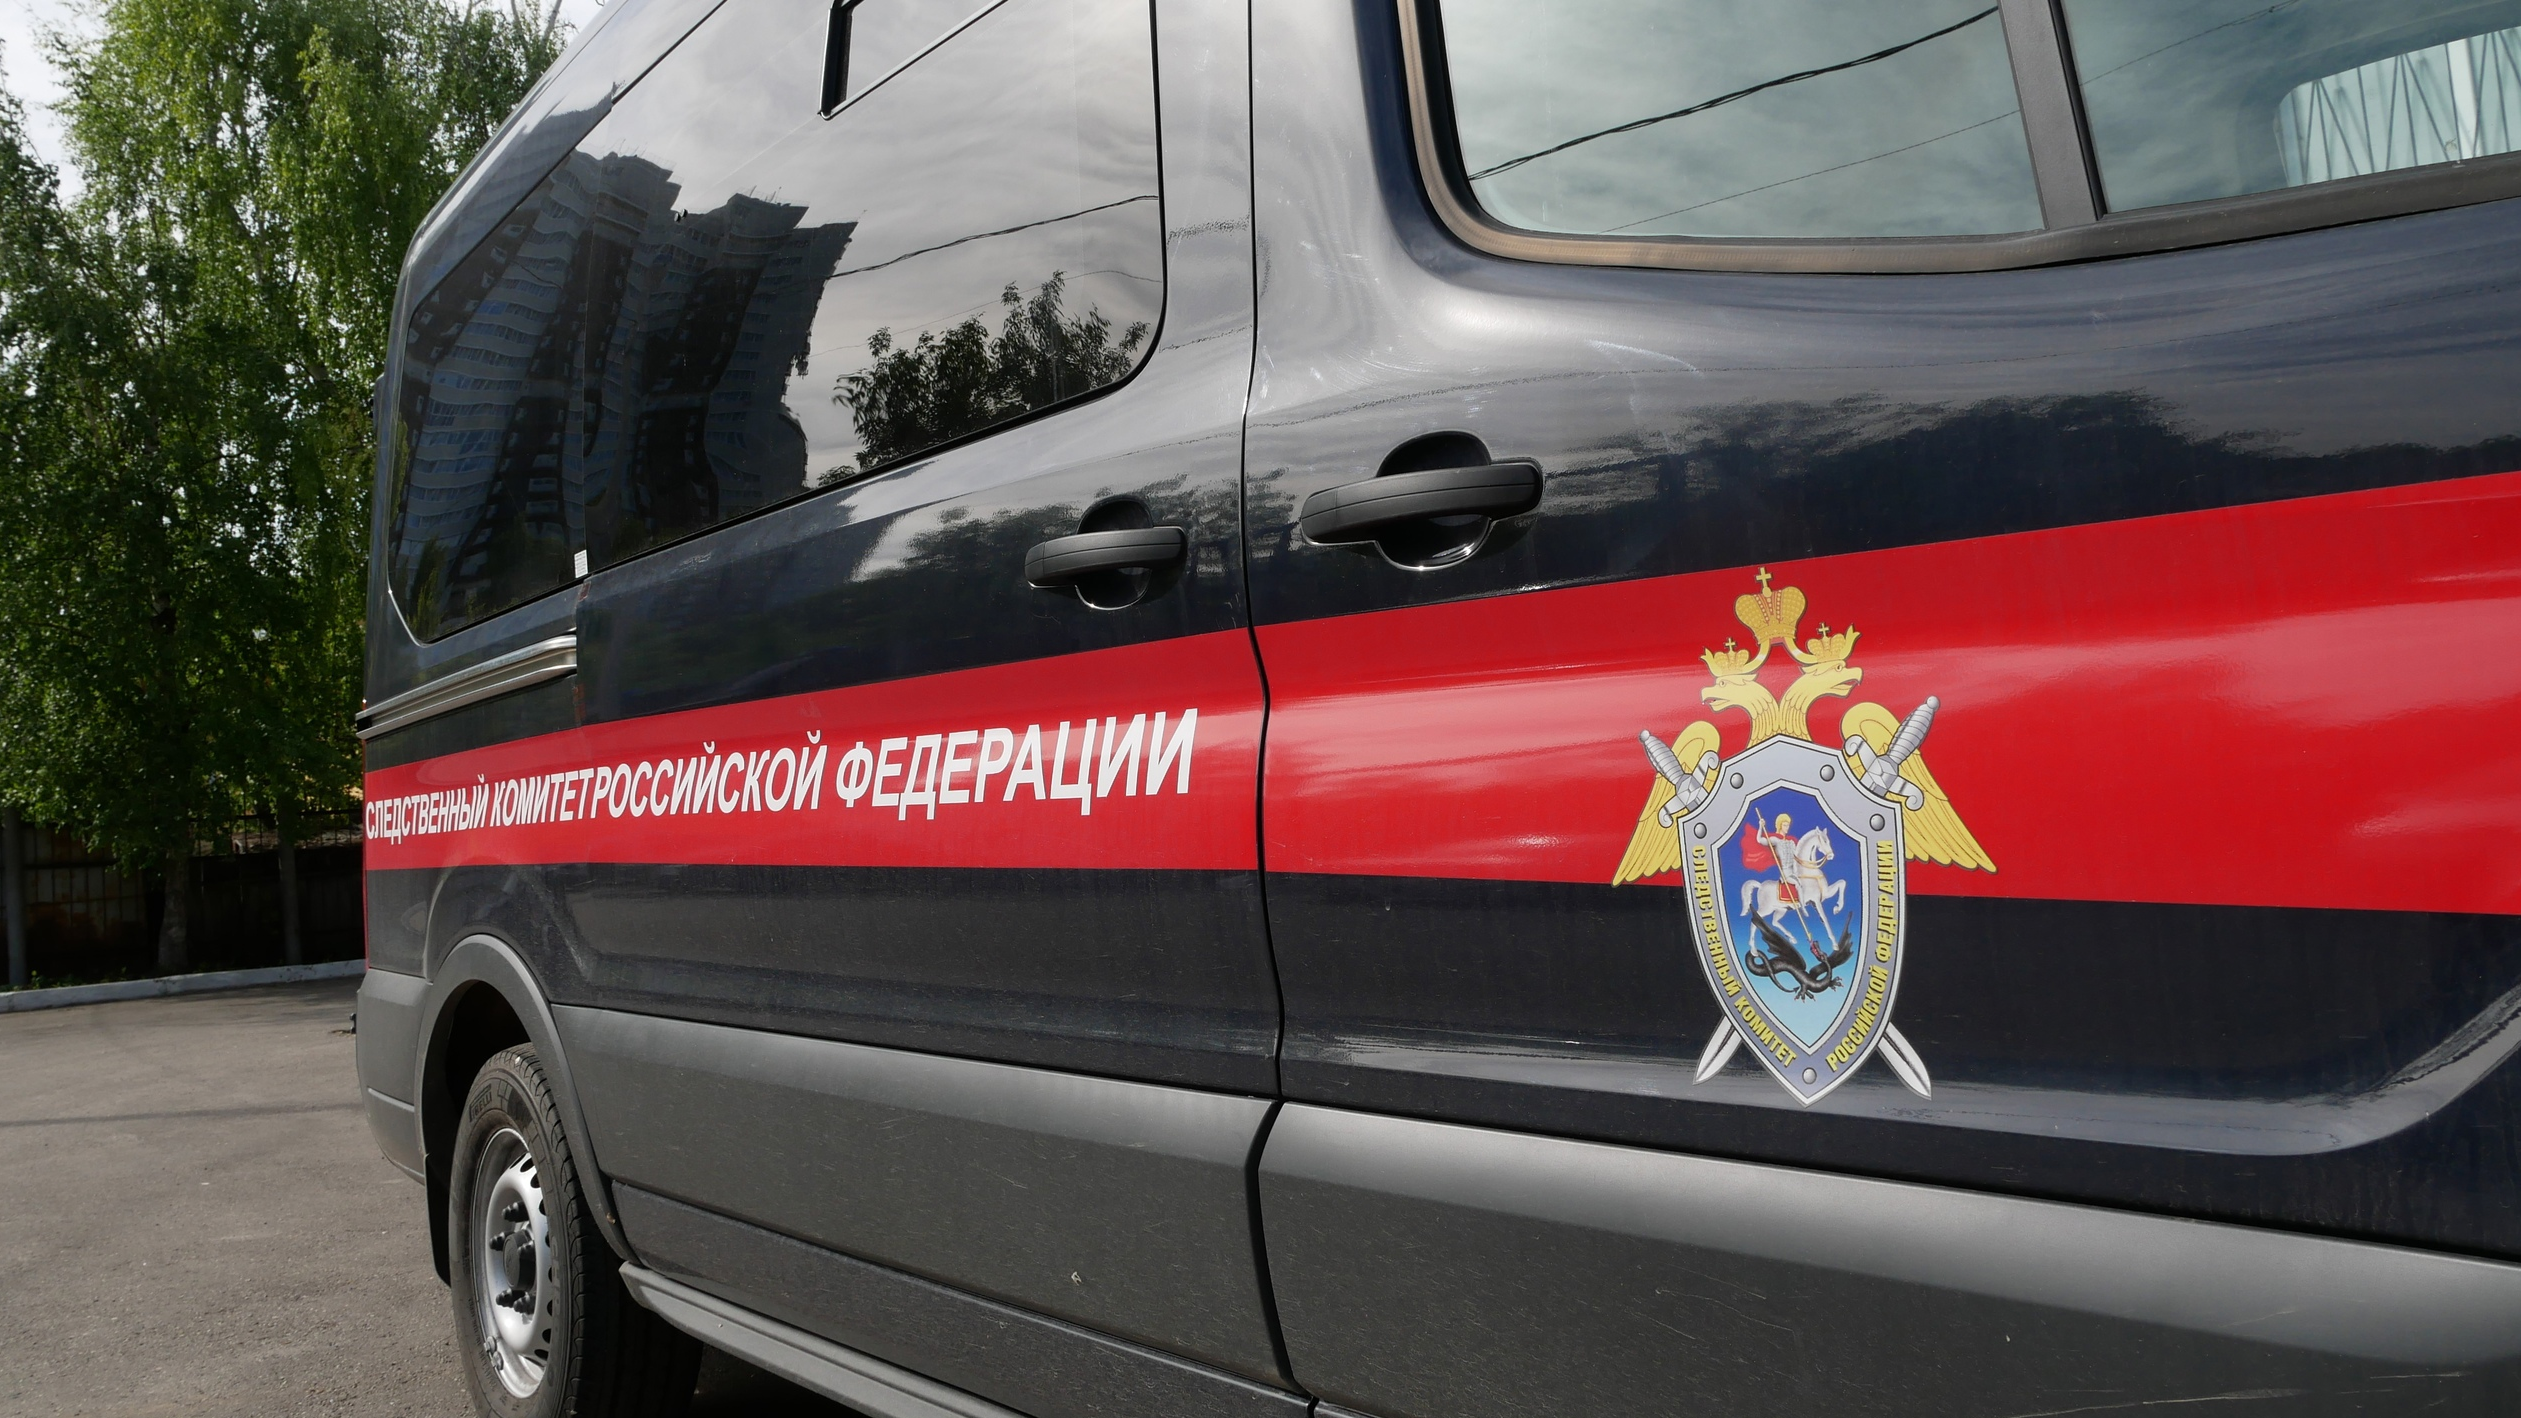 Двое детей погибли в ДТП из-за пьяного водителя: в СК РФ завершили расследование